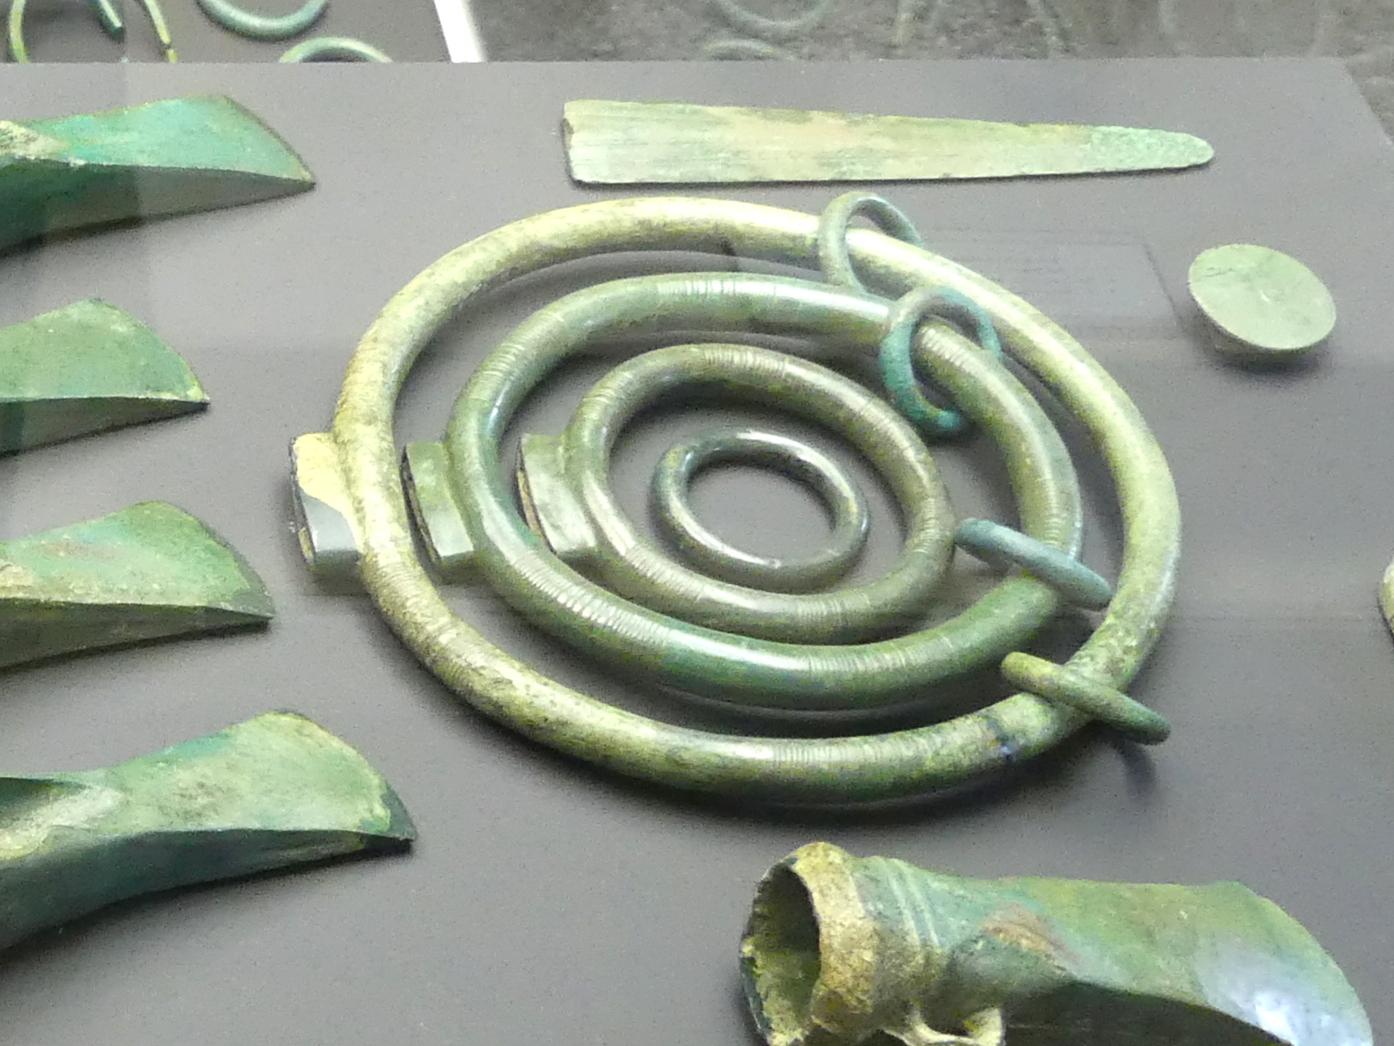 Ringgehänge, Urnenfelderzeit, 1400 - 700 v. Chr., 900 - 700 v. Chr., Bild 2/3